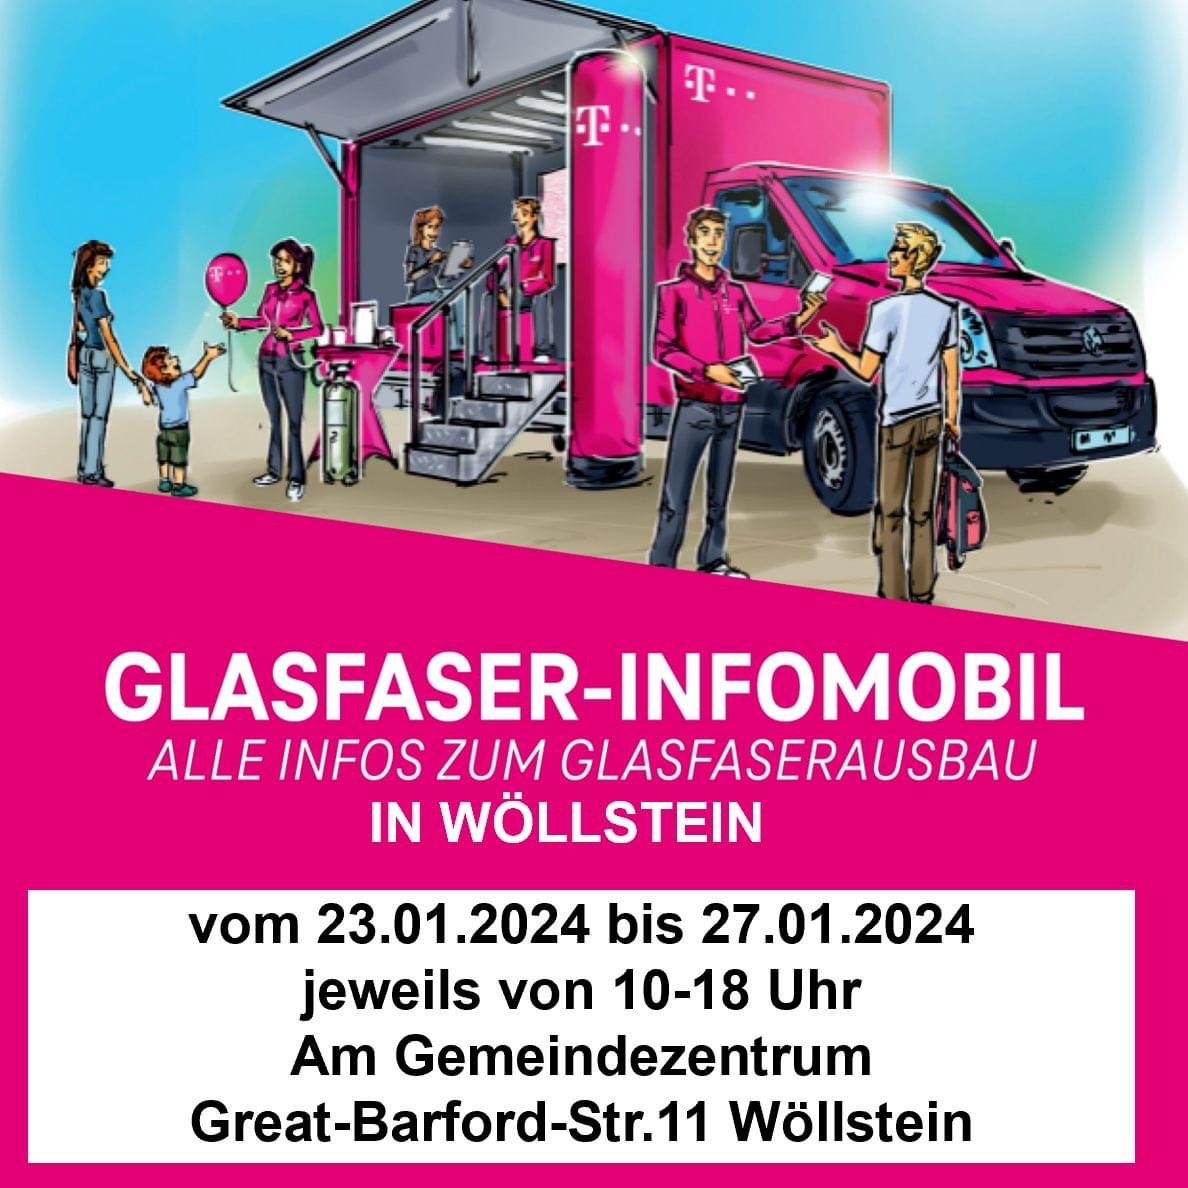 Glasfaser-Infomobil in Wöllstein